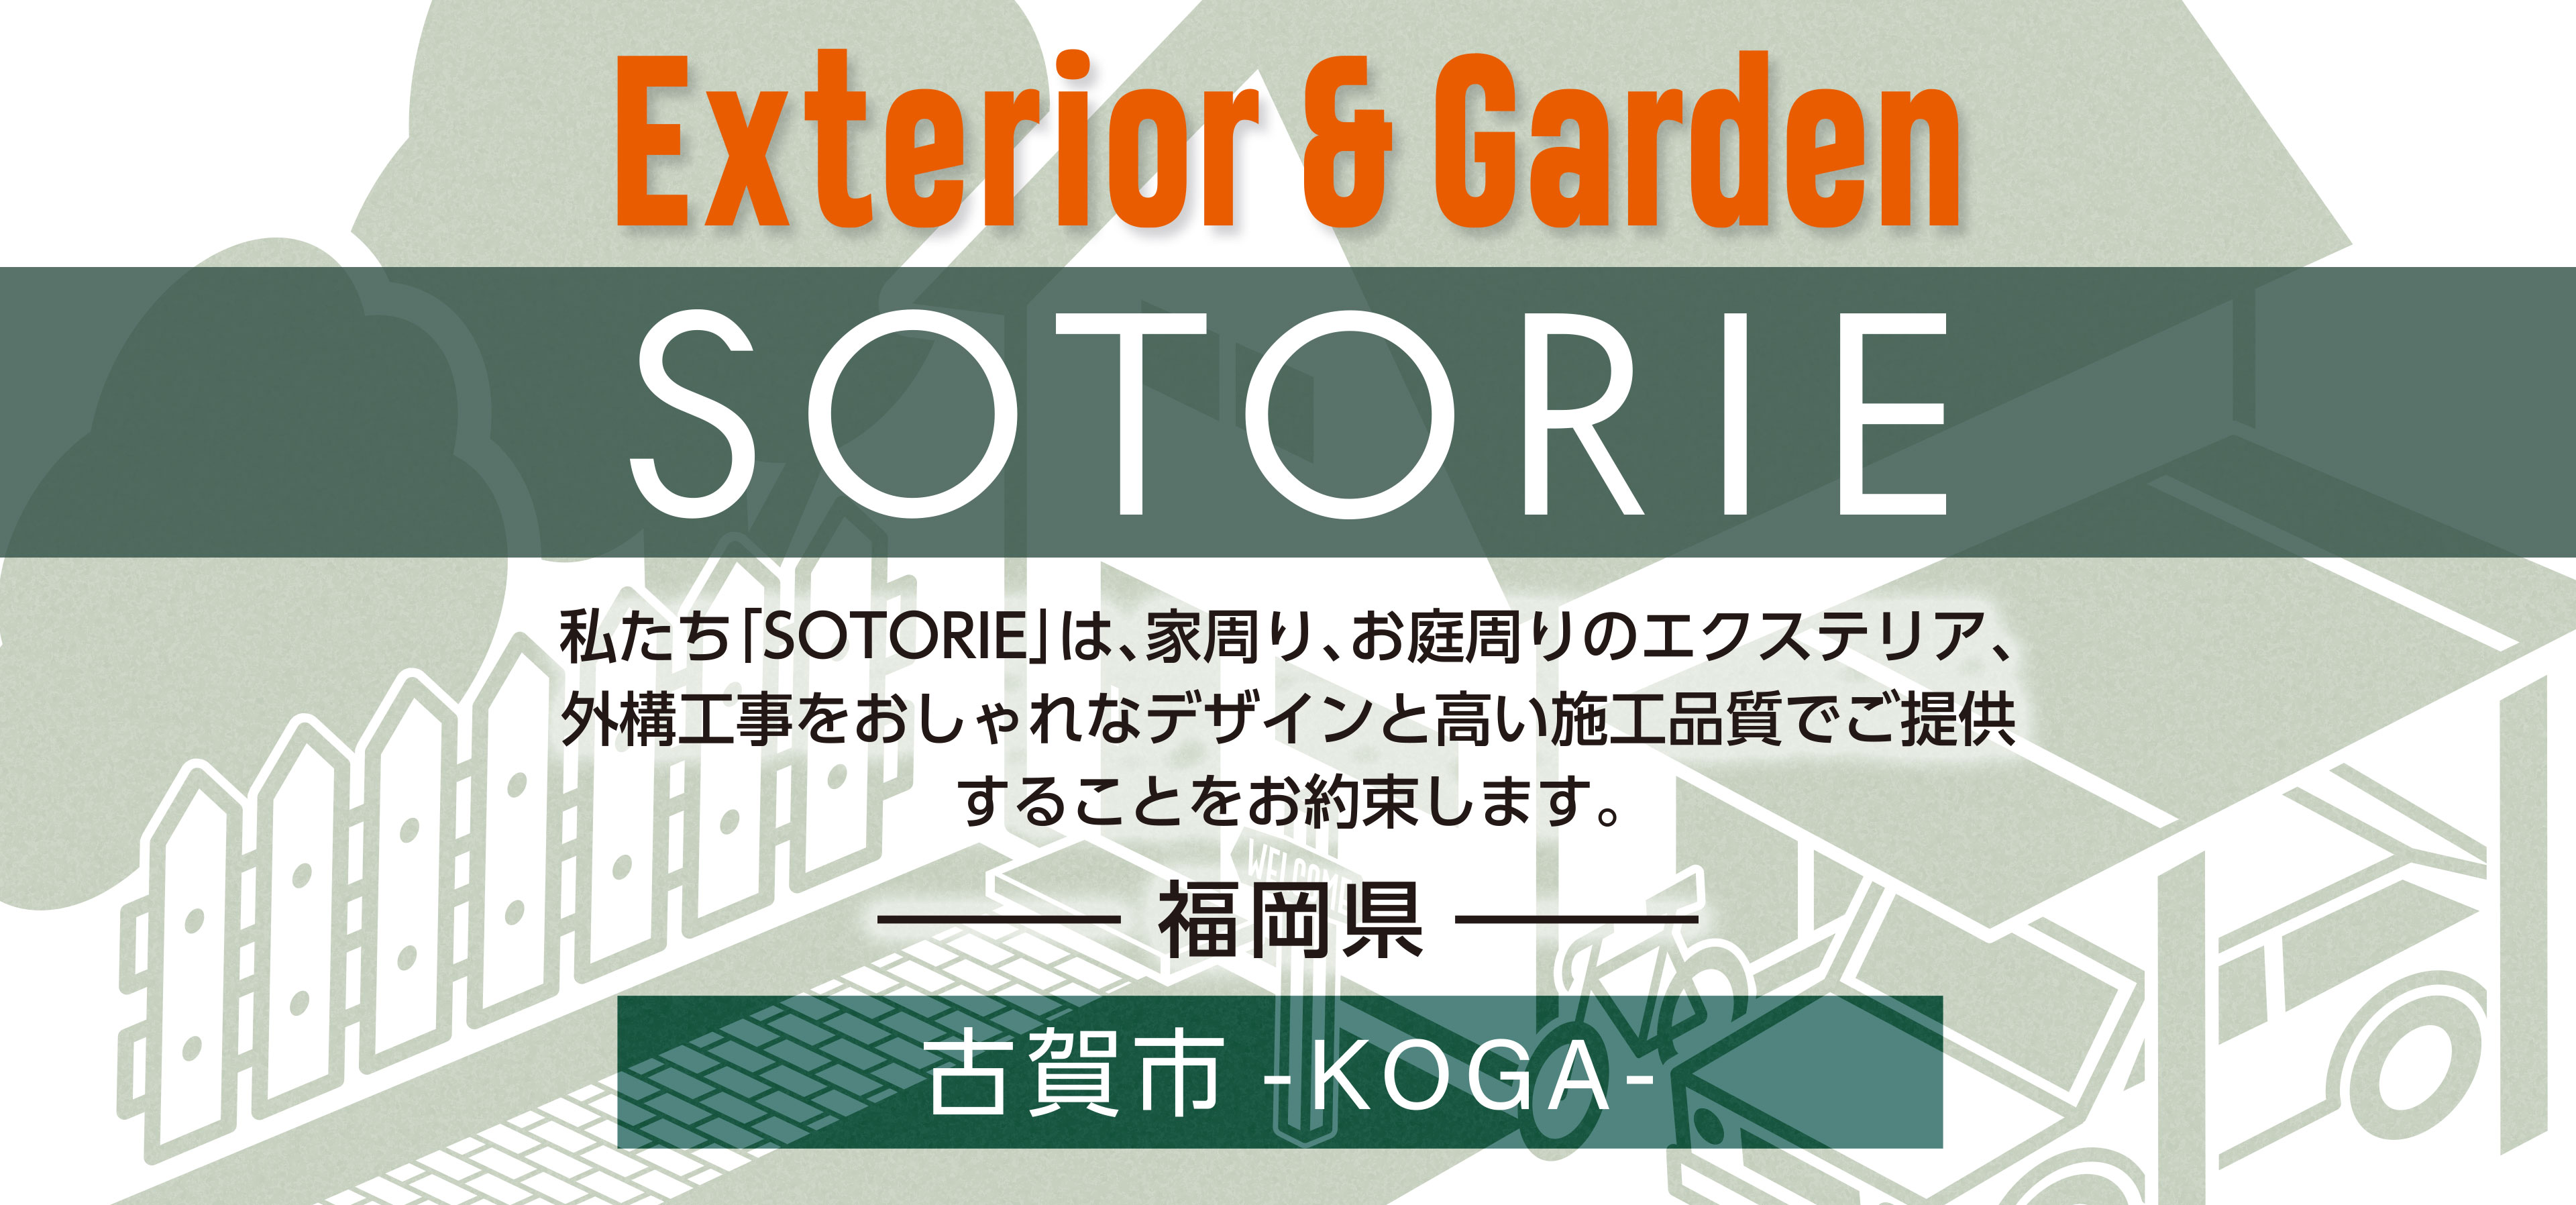 ソトリエ古賀市では、家周りと庭周りの外構、エクステリア工事をおしゃれなデザインと高い施工品質でご提供することをお約束します。